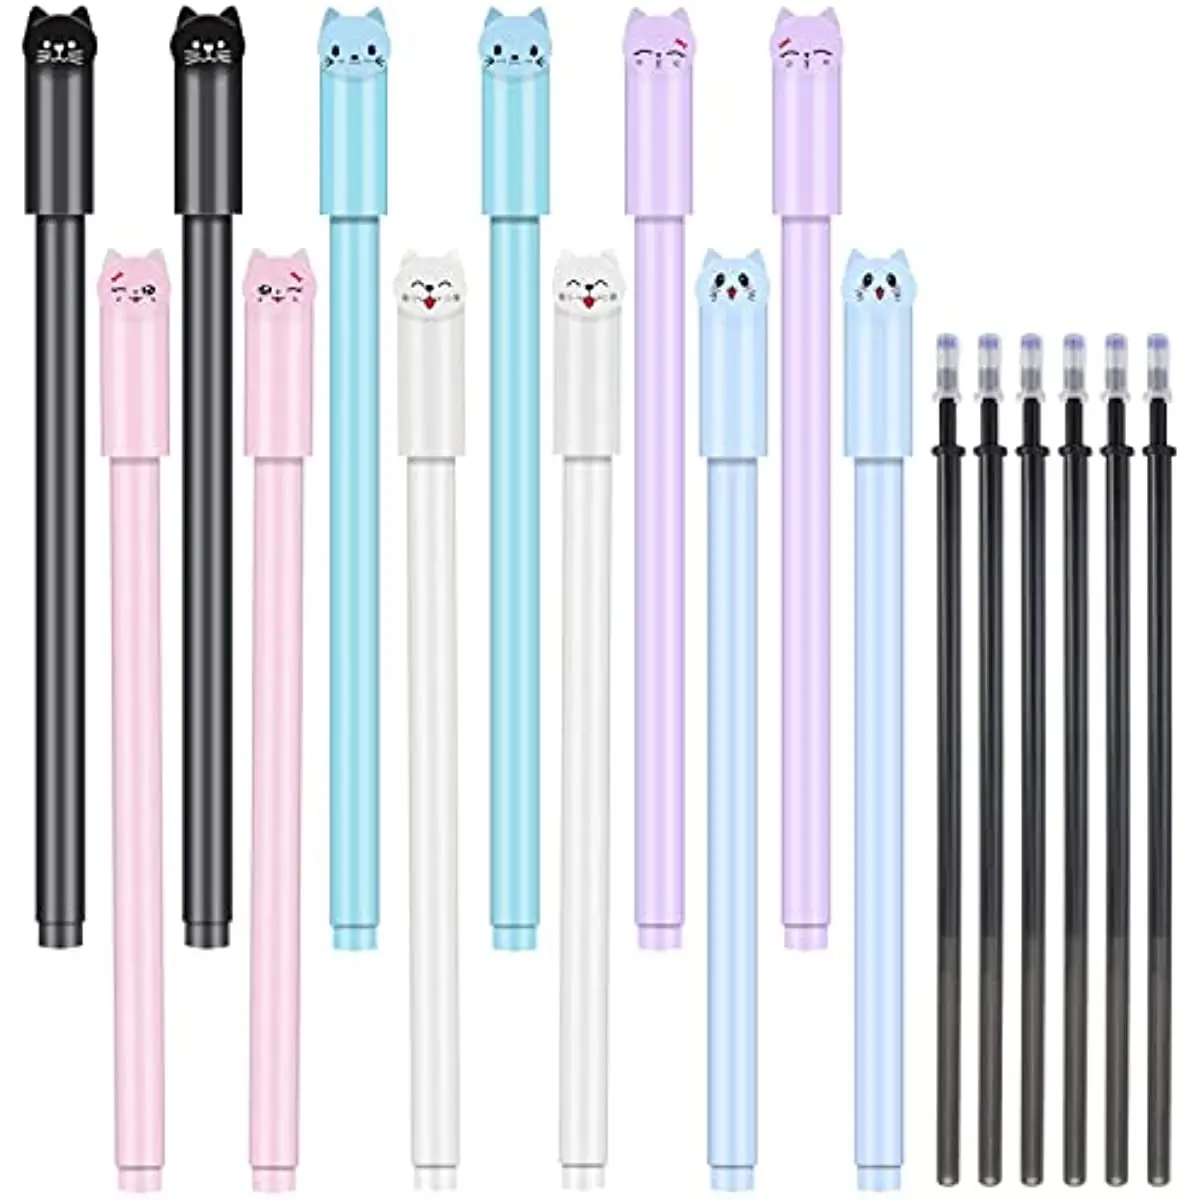 24 Pcs Cat Cute Pens Replacement Refills Girl Kawaii Cartoon Black Ball Point Pens School Office Supplies Students Gifts